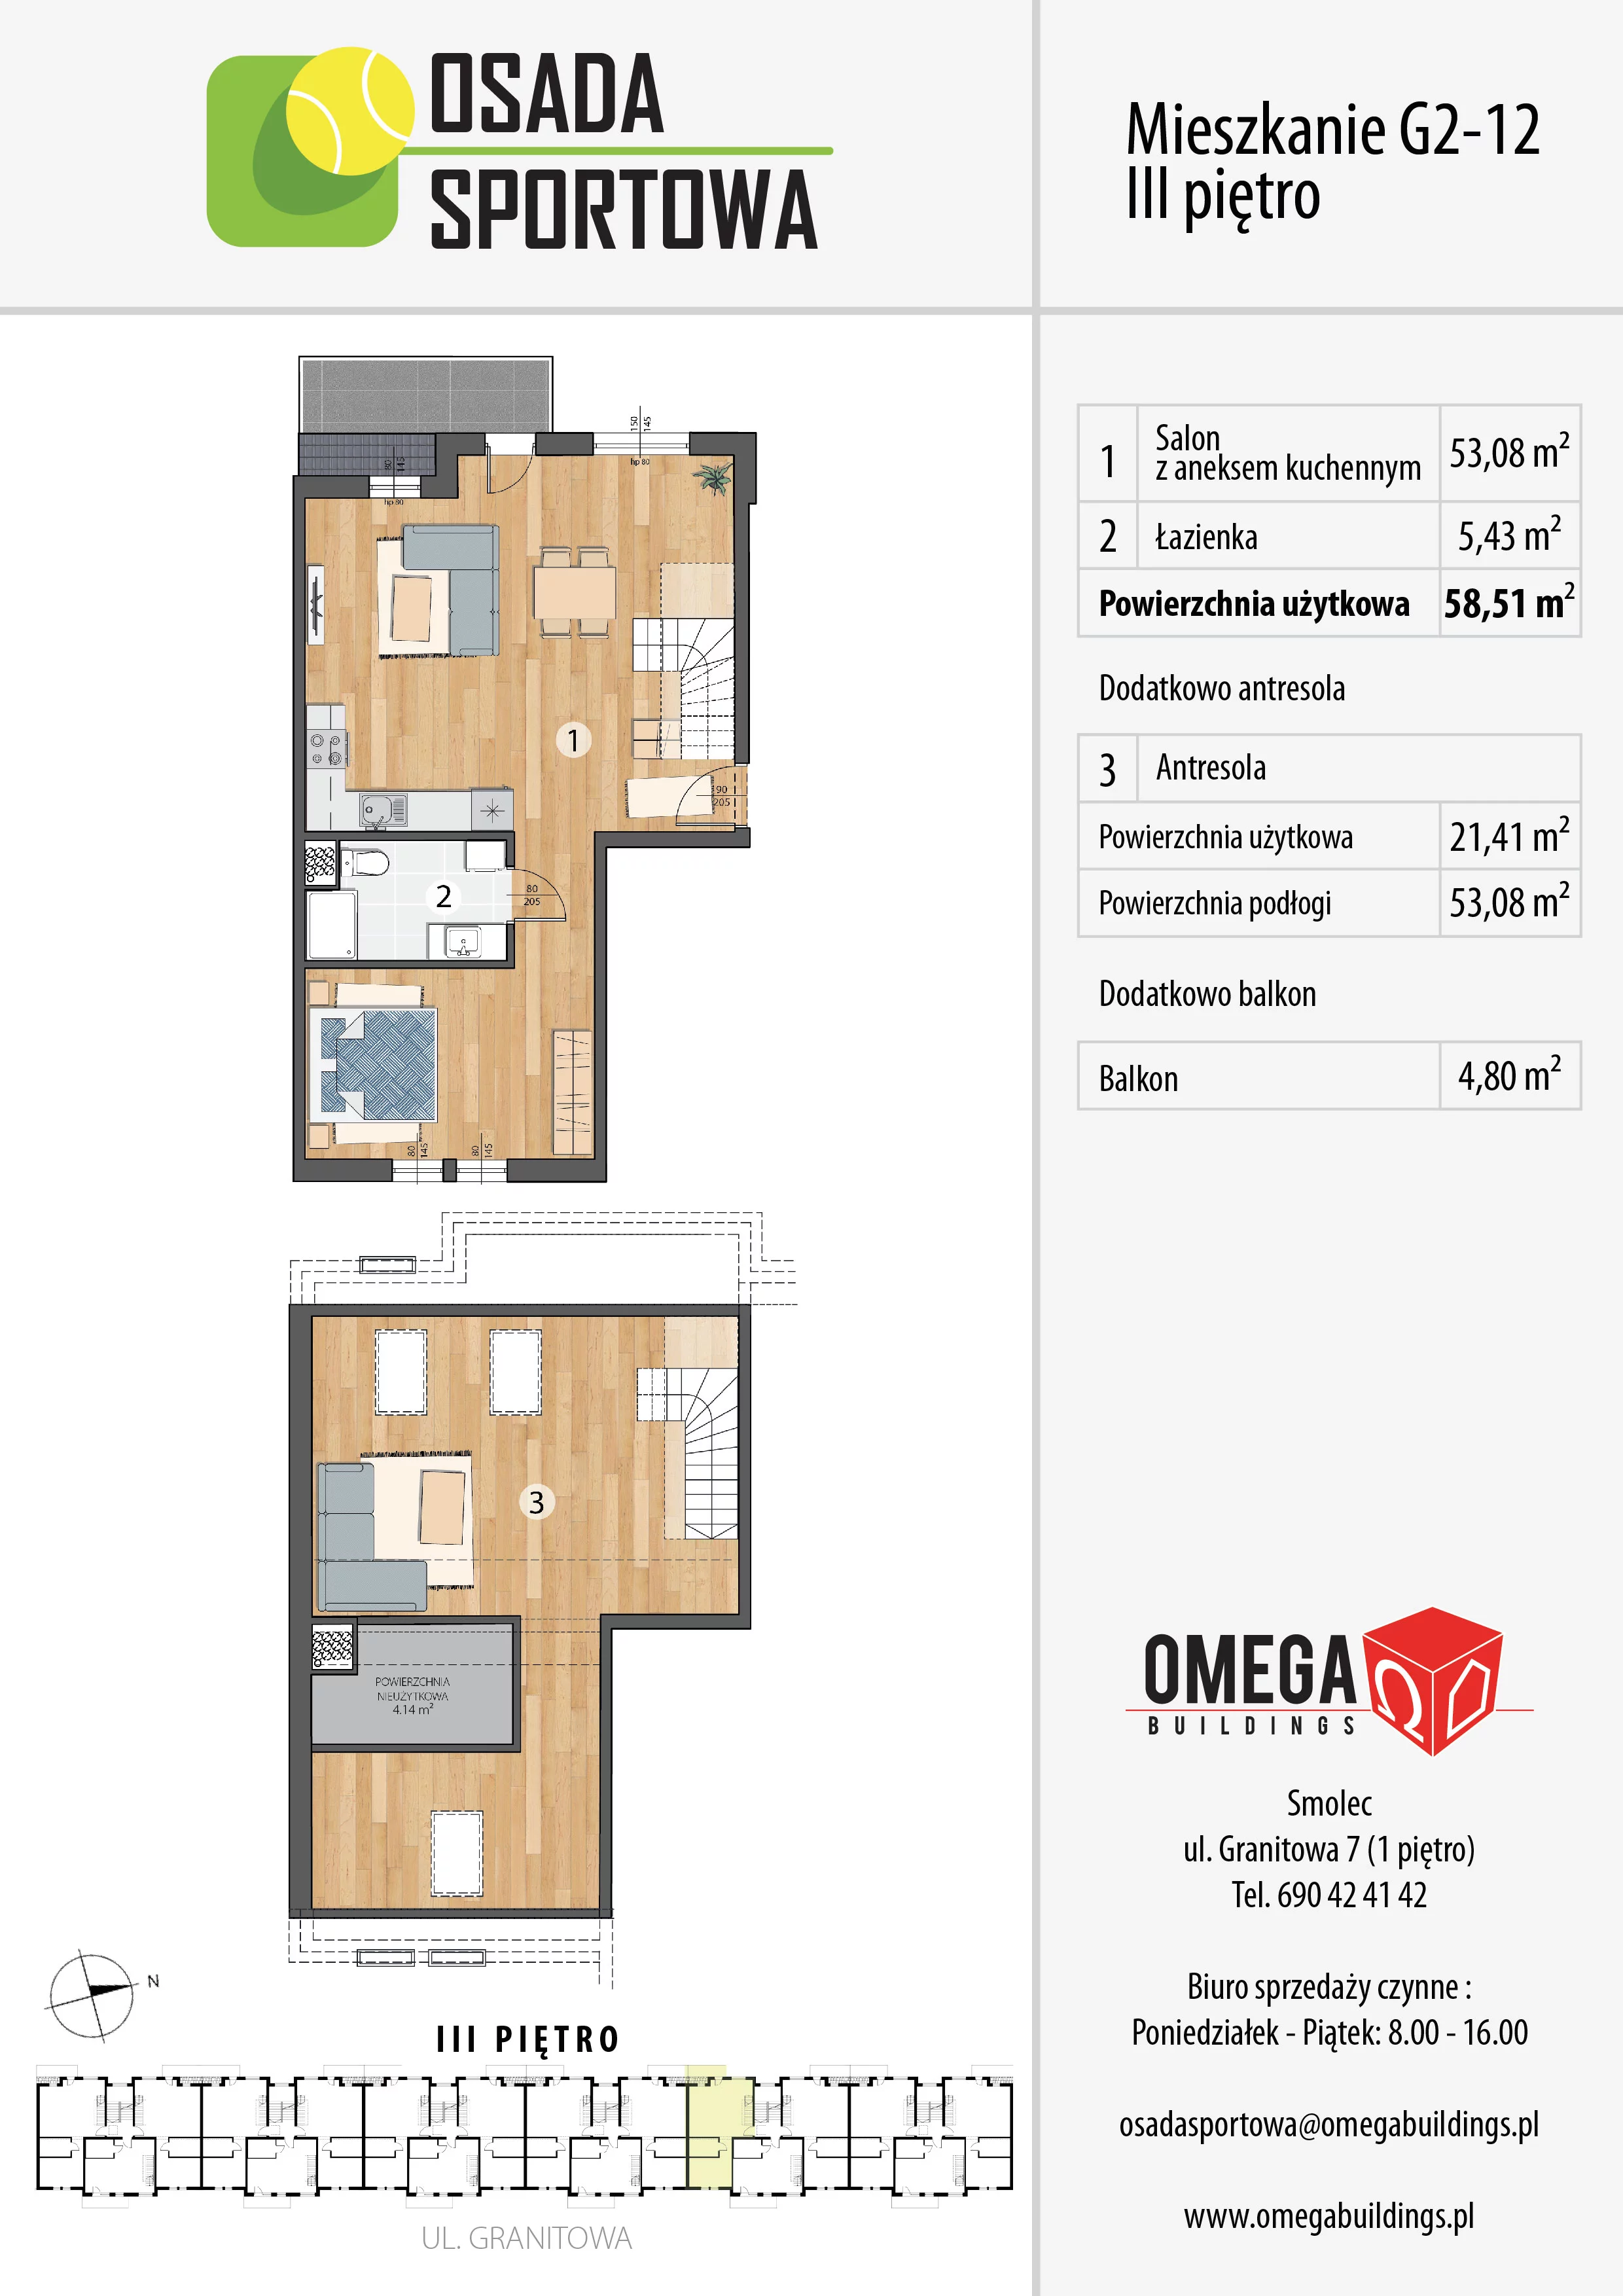 Mieszkanie 79,72 m², piętro 3, oferta nr G2-12, Osada Sportowa Budynek G, Smolec, ul. Granitowa 52-62